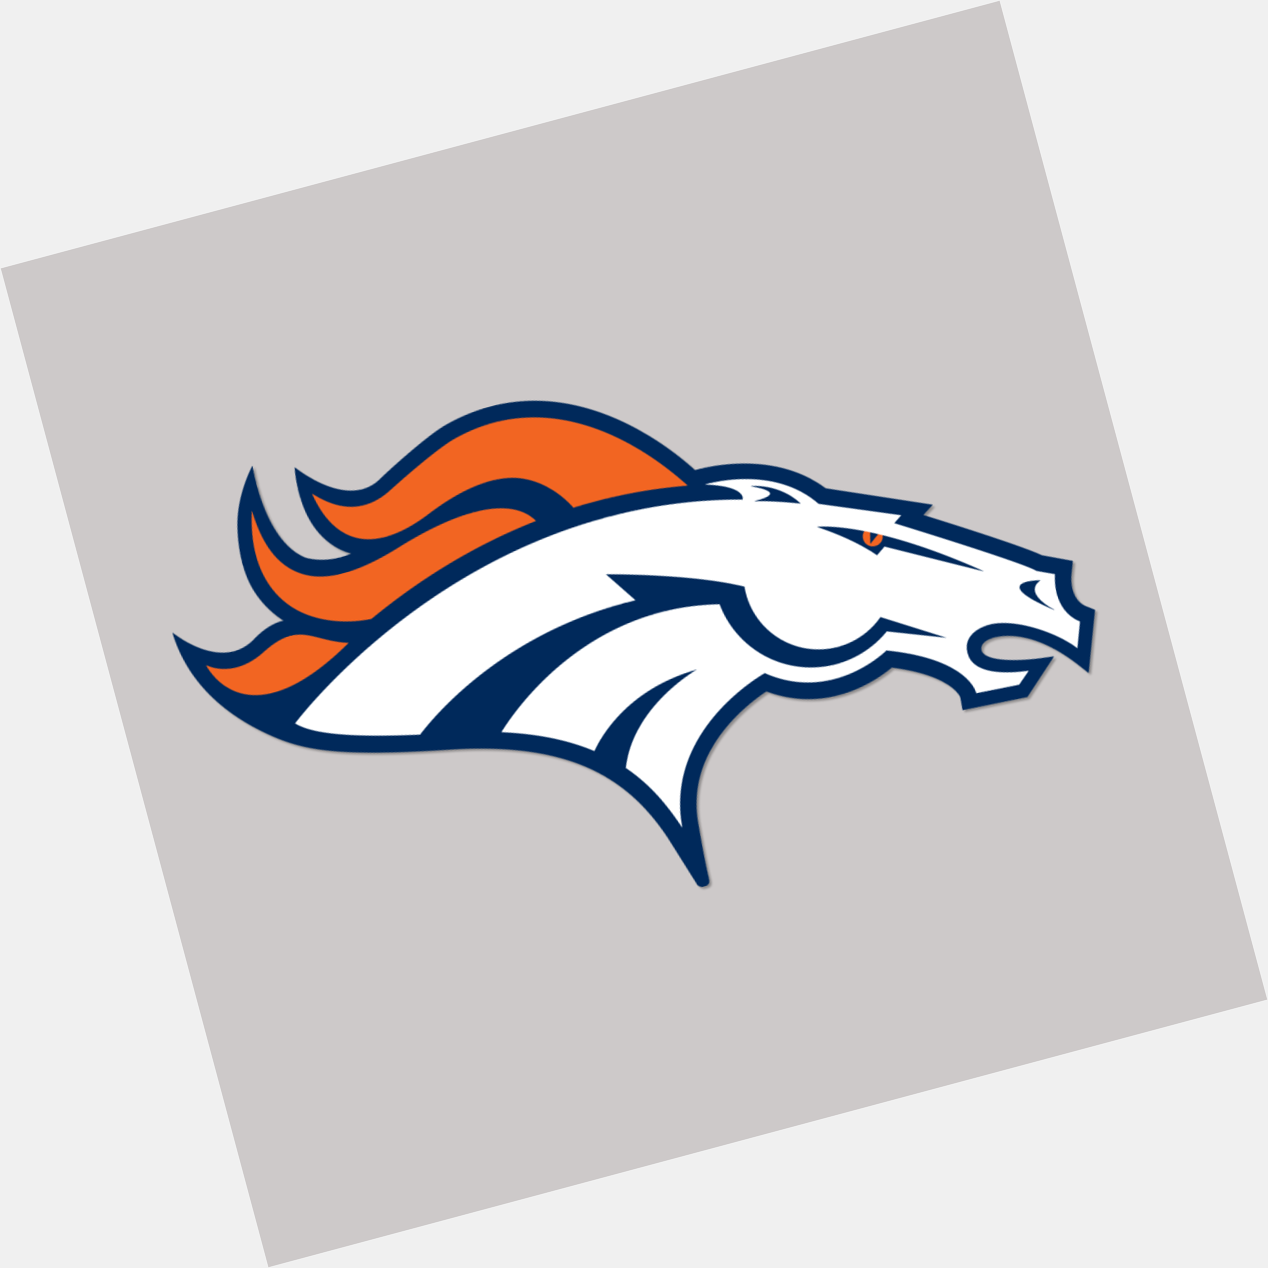 Broncos : Happy birthday, Dawk! 

Remessage to wish BrianDawkins a g 